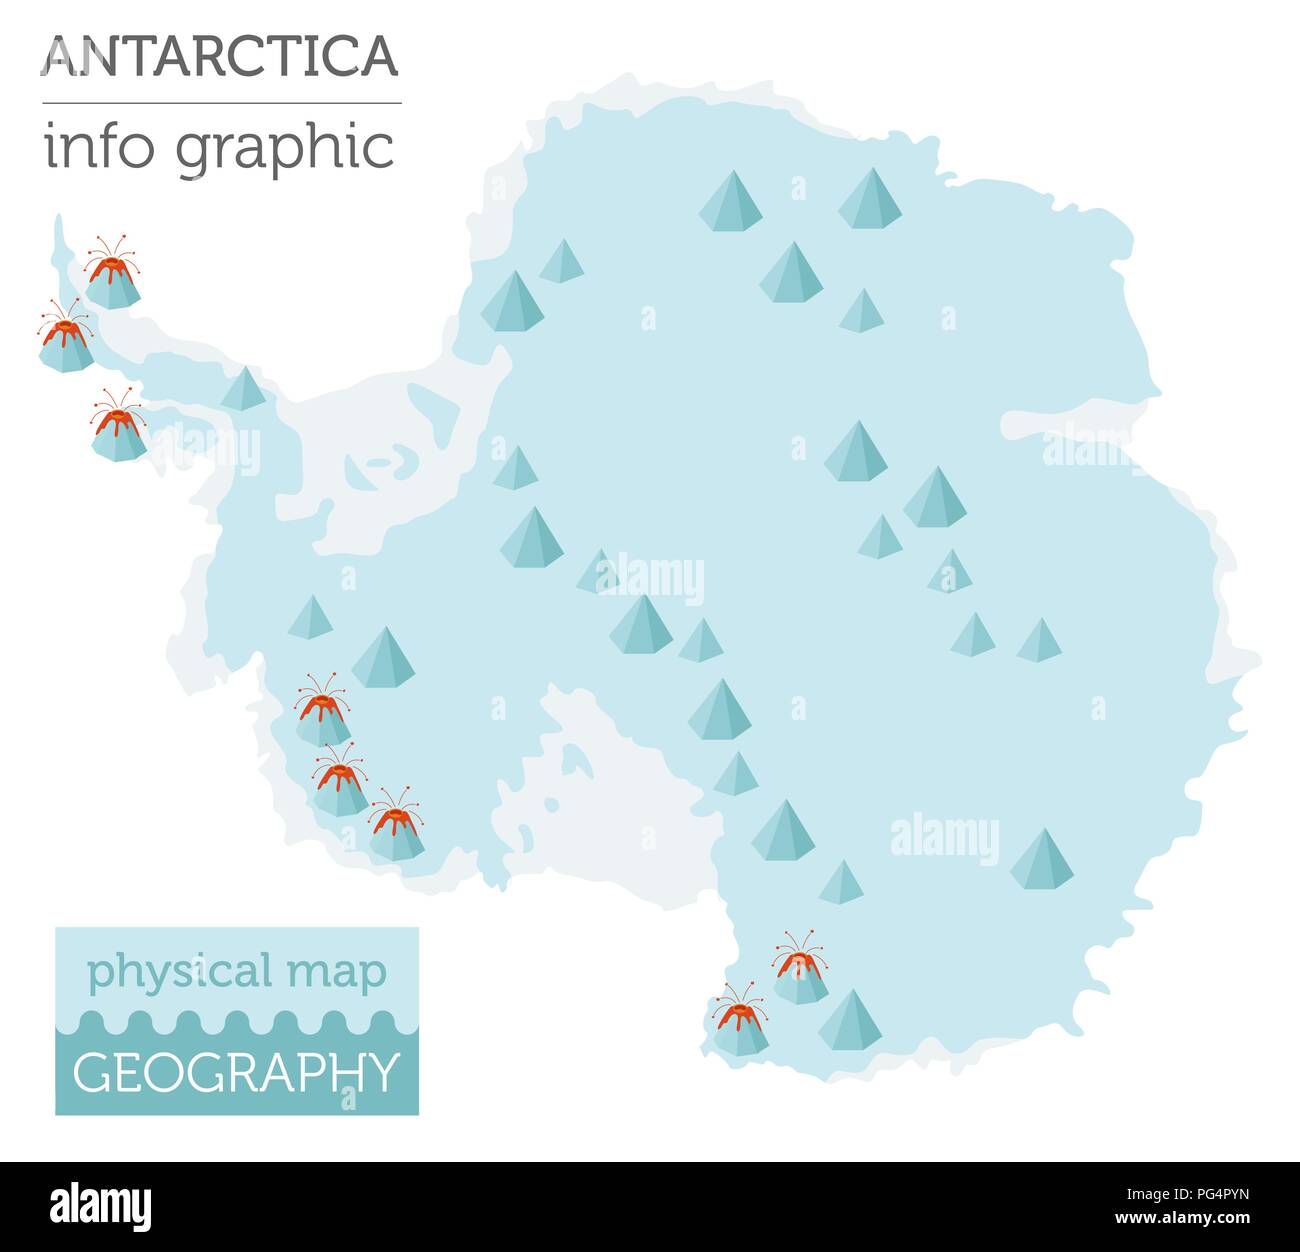 Antarktis physische Karte Elemente. Ihre eigene Geographie info Graphische Sammlung aufzubauen. Vector Illustration Stock Vektor